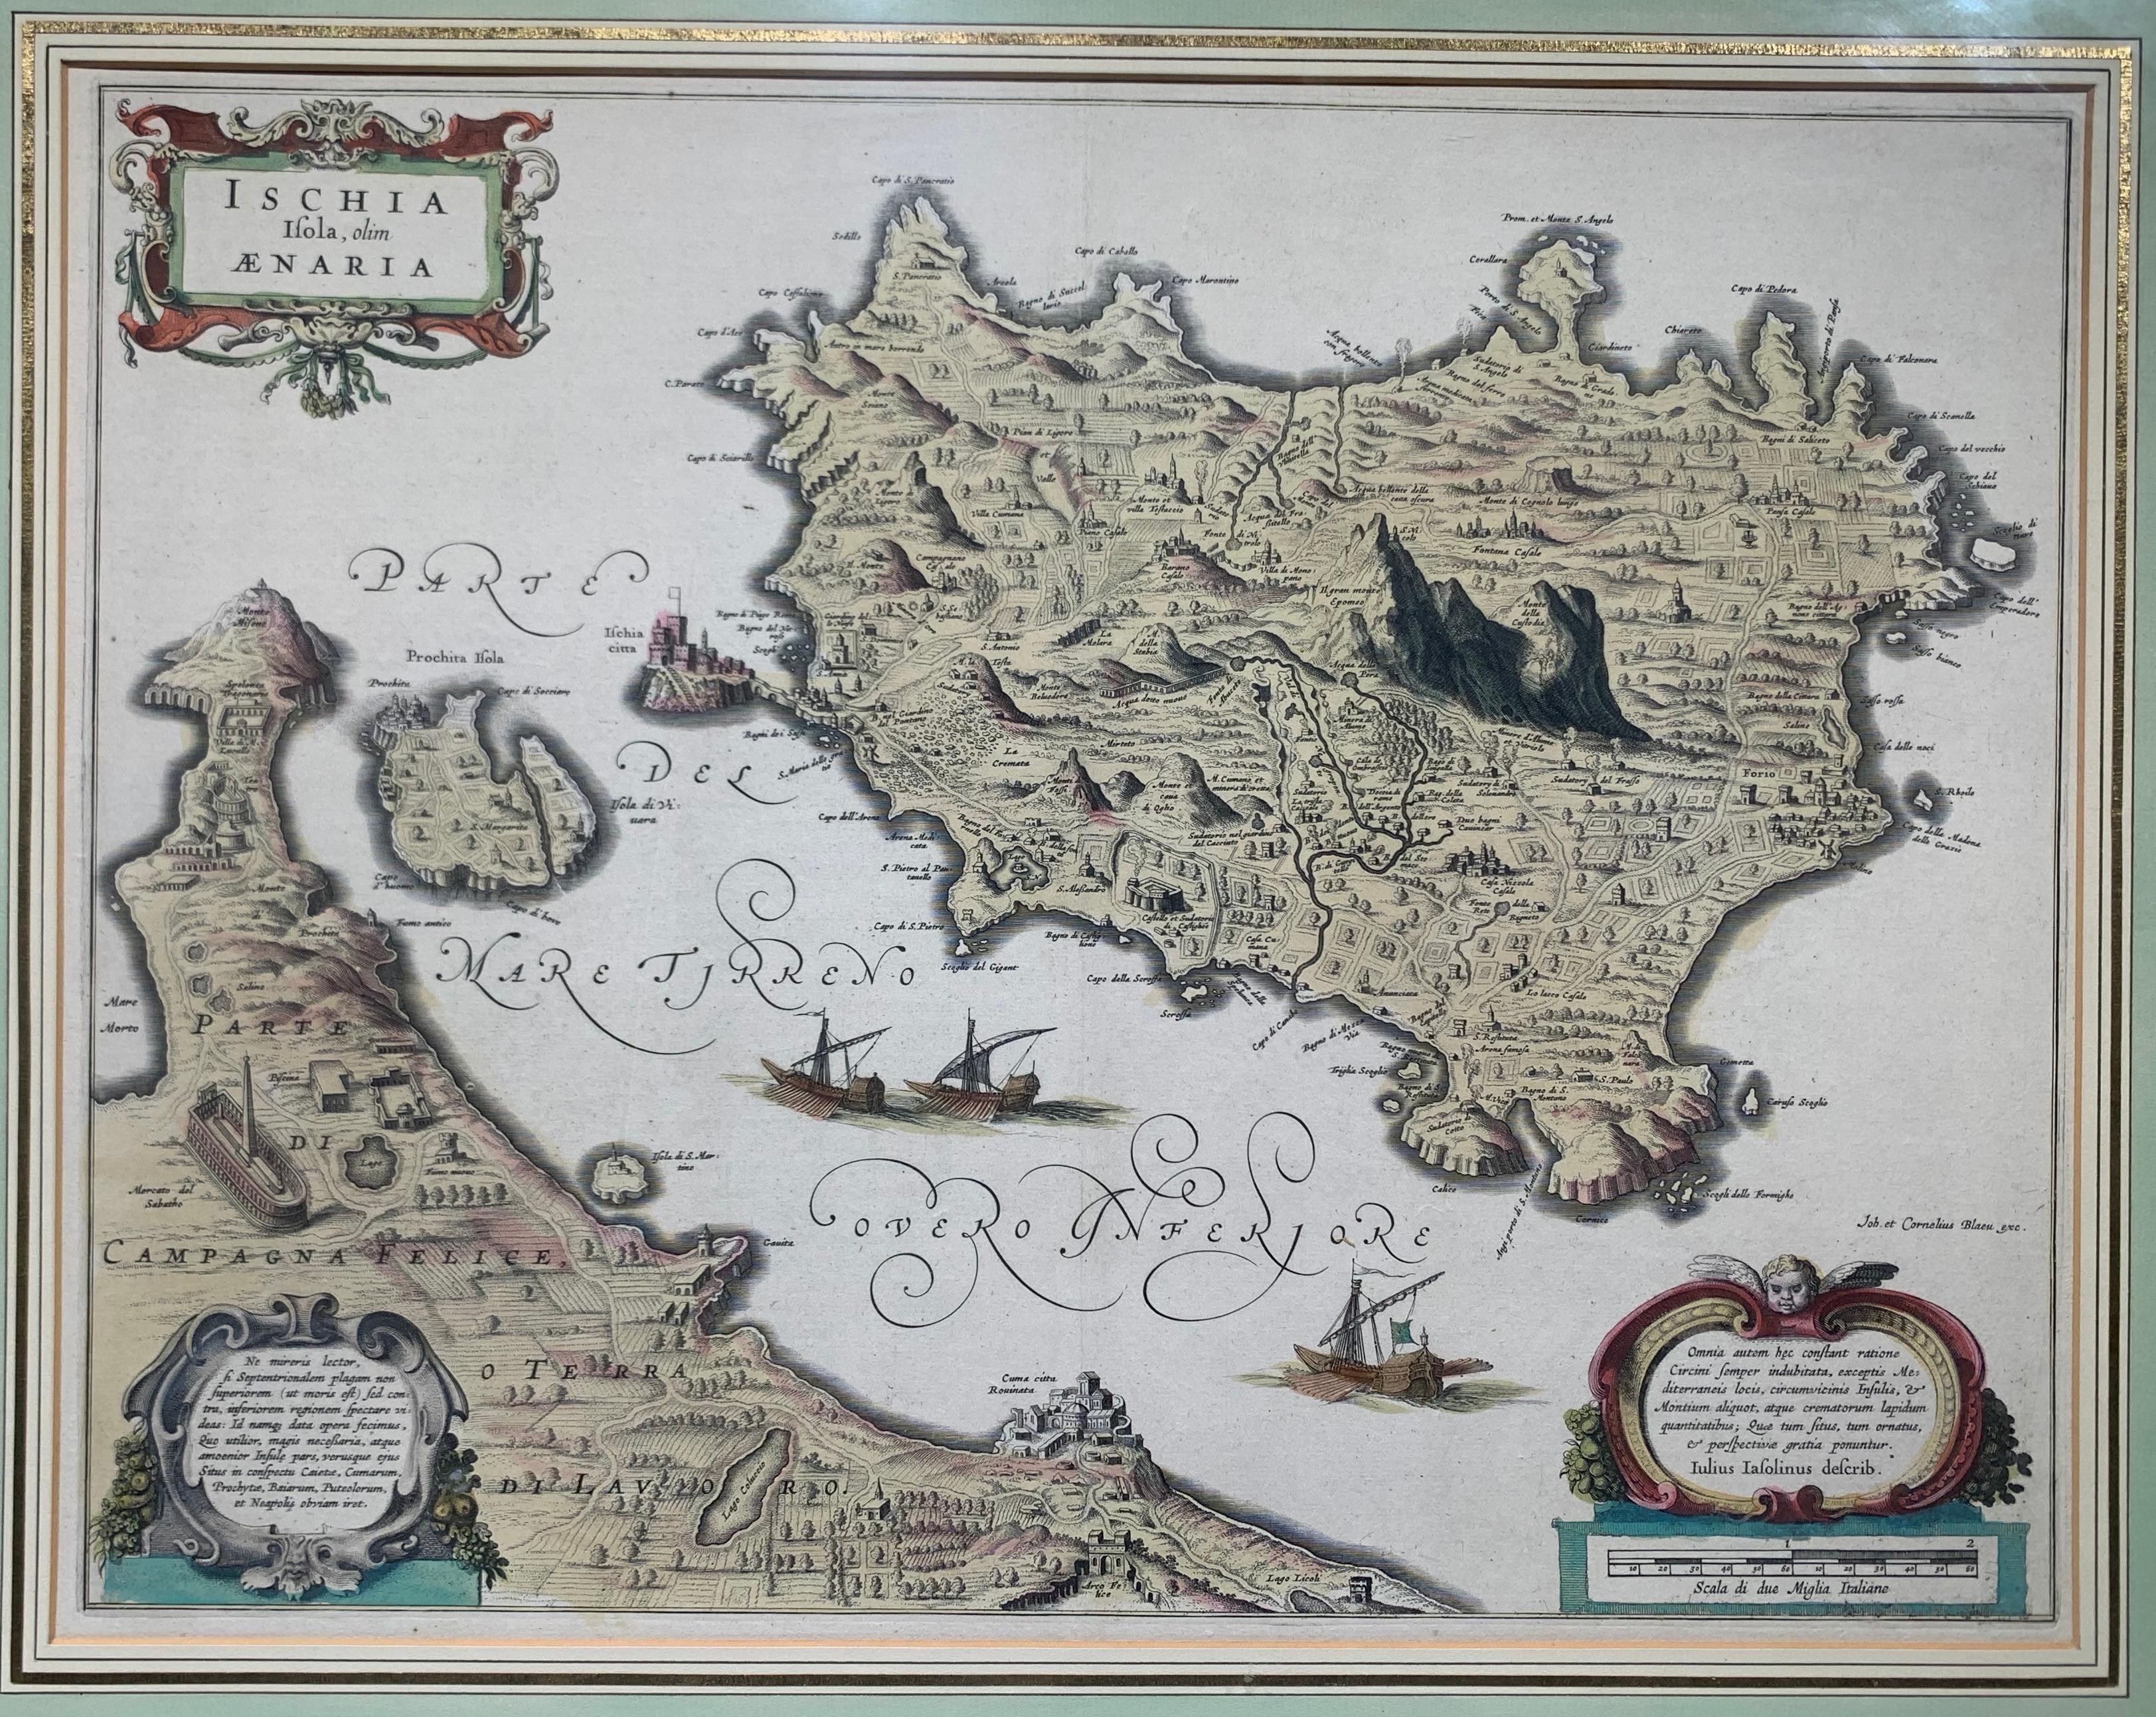 Ischia Isola, olim Aenaria (Antique Italian Map Italy) - Print by Willem Blaeu